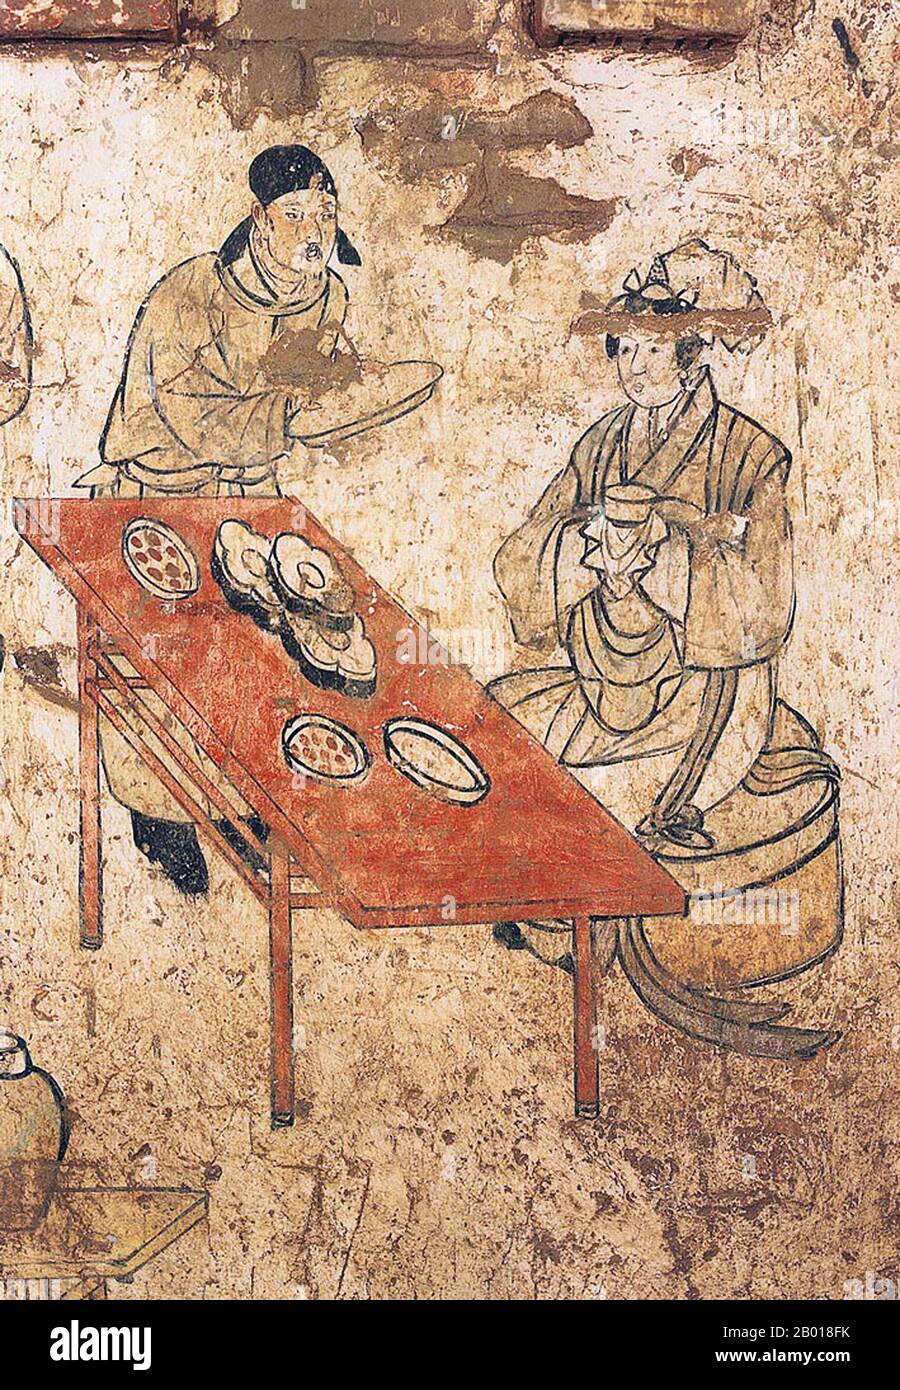 Chine : une dame se férule dans une murale dans la tombe de Han Shixun, Xuanhua, Hebei, dynastie Liao (1093-1117). La dynastie des Liao, aussi connue sous le nom d'Empire Khitan, était un État qui régnait sur les régions de Manchurie, de Mongolie et certaines parties du nord de la Chine. Elle a été fondée par le clan Yelü du peuple Khitan la même année que la dynastie Tang s'est effondrée (907), même si son premier dirigeant, Yelü Abaoji (Yarud Ambagai Khan), n'a déclaré un nom d'époque que 916. Le nom 'Liao' (officiellement 'Great Liao') n'a été officiellement adopté qu'en 947, sous l'empereur Yelü Ruan. Banque D'Images